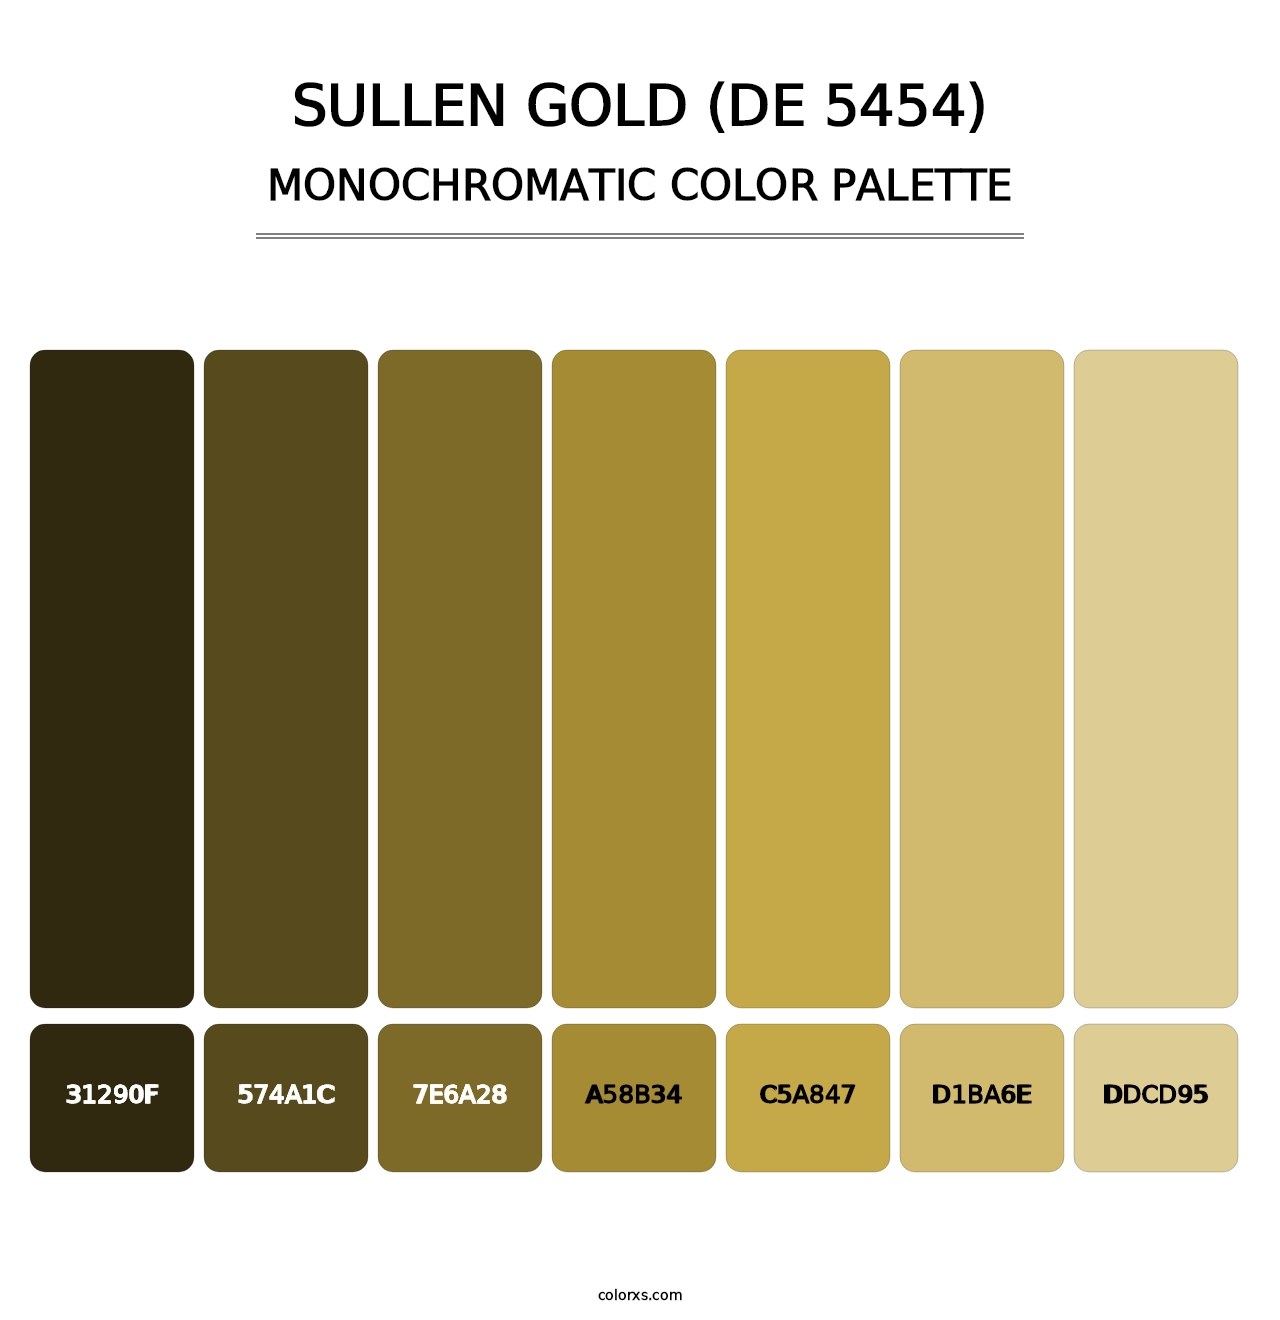 Sullen Gold (DE 5454) - Monochromatic Color Palette